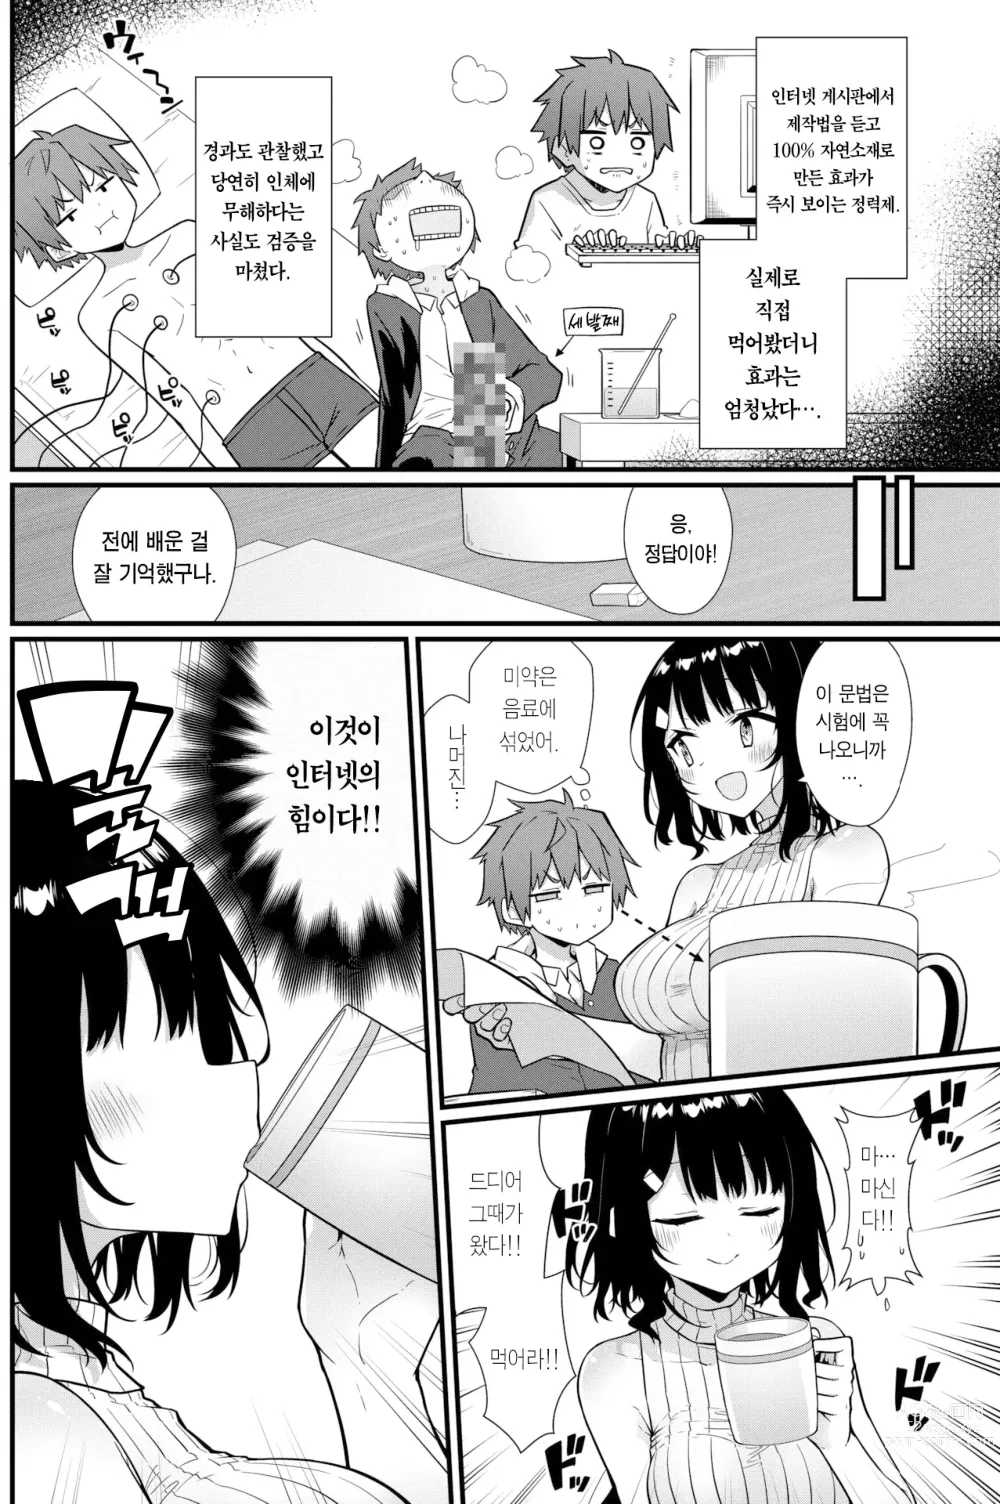 Page 5 of manga 선생님에게 듣는 약은 없다! (decensored)